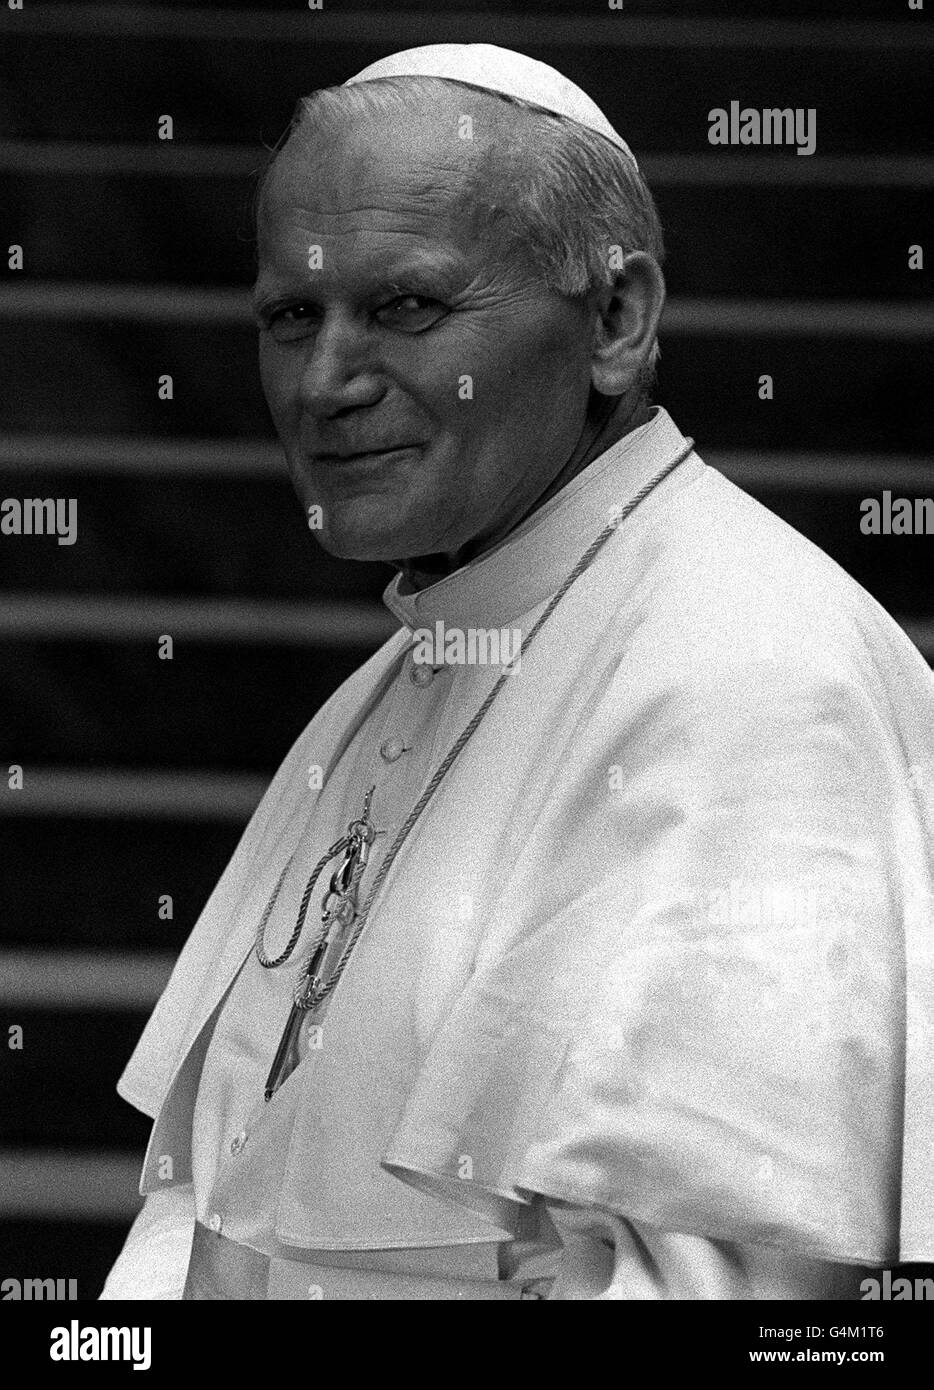 Religion - Le Pape Jean Paul II Visite en Grande-Bretagne - Edimbourg Banque D'Images